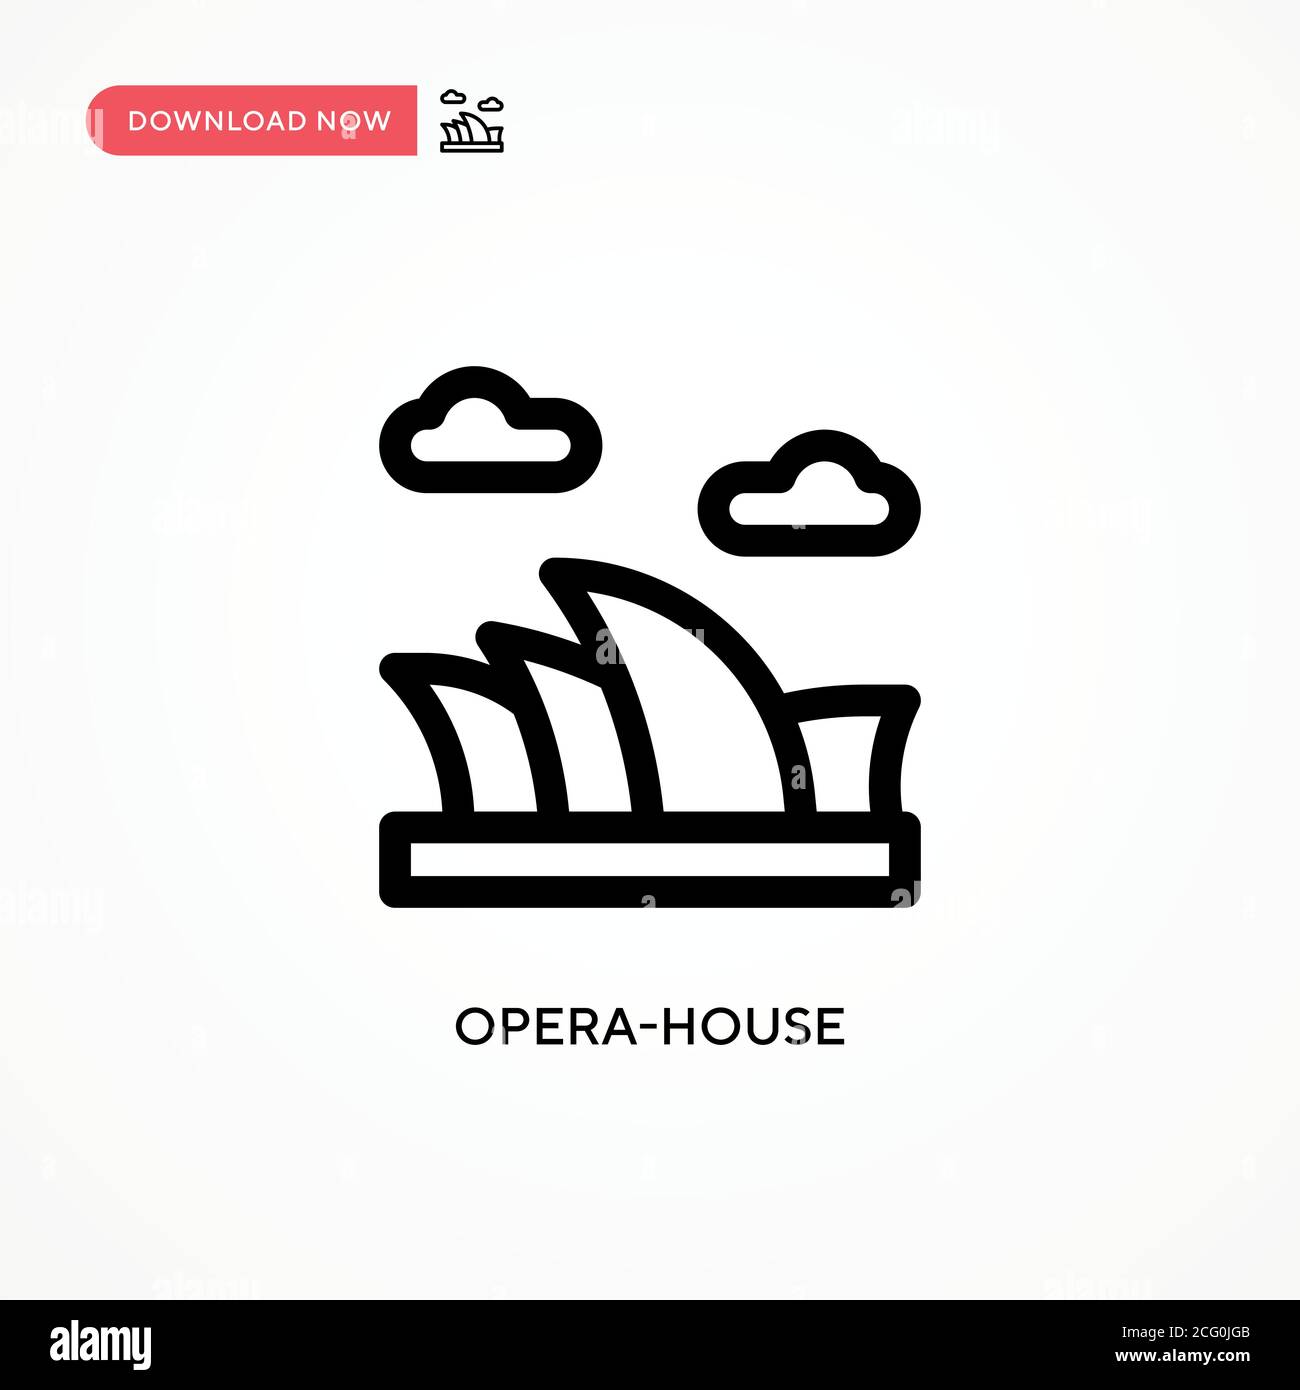 Einfaches Vektorsymbol für das Opernhaus. Moderne, einfache flache Vektor-Illustration für Website oder mobile App Stock Vektor